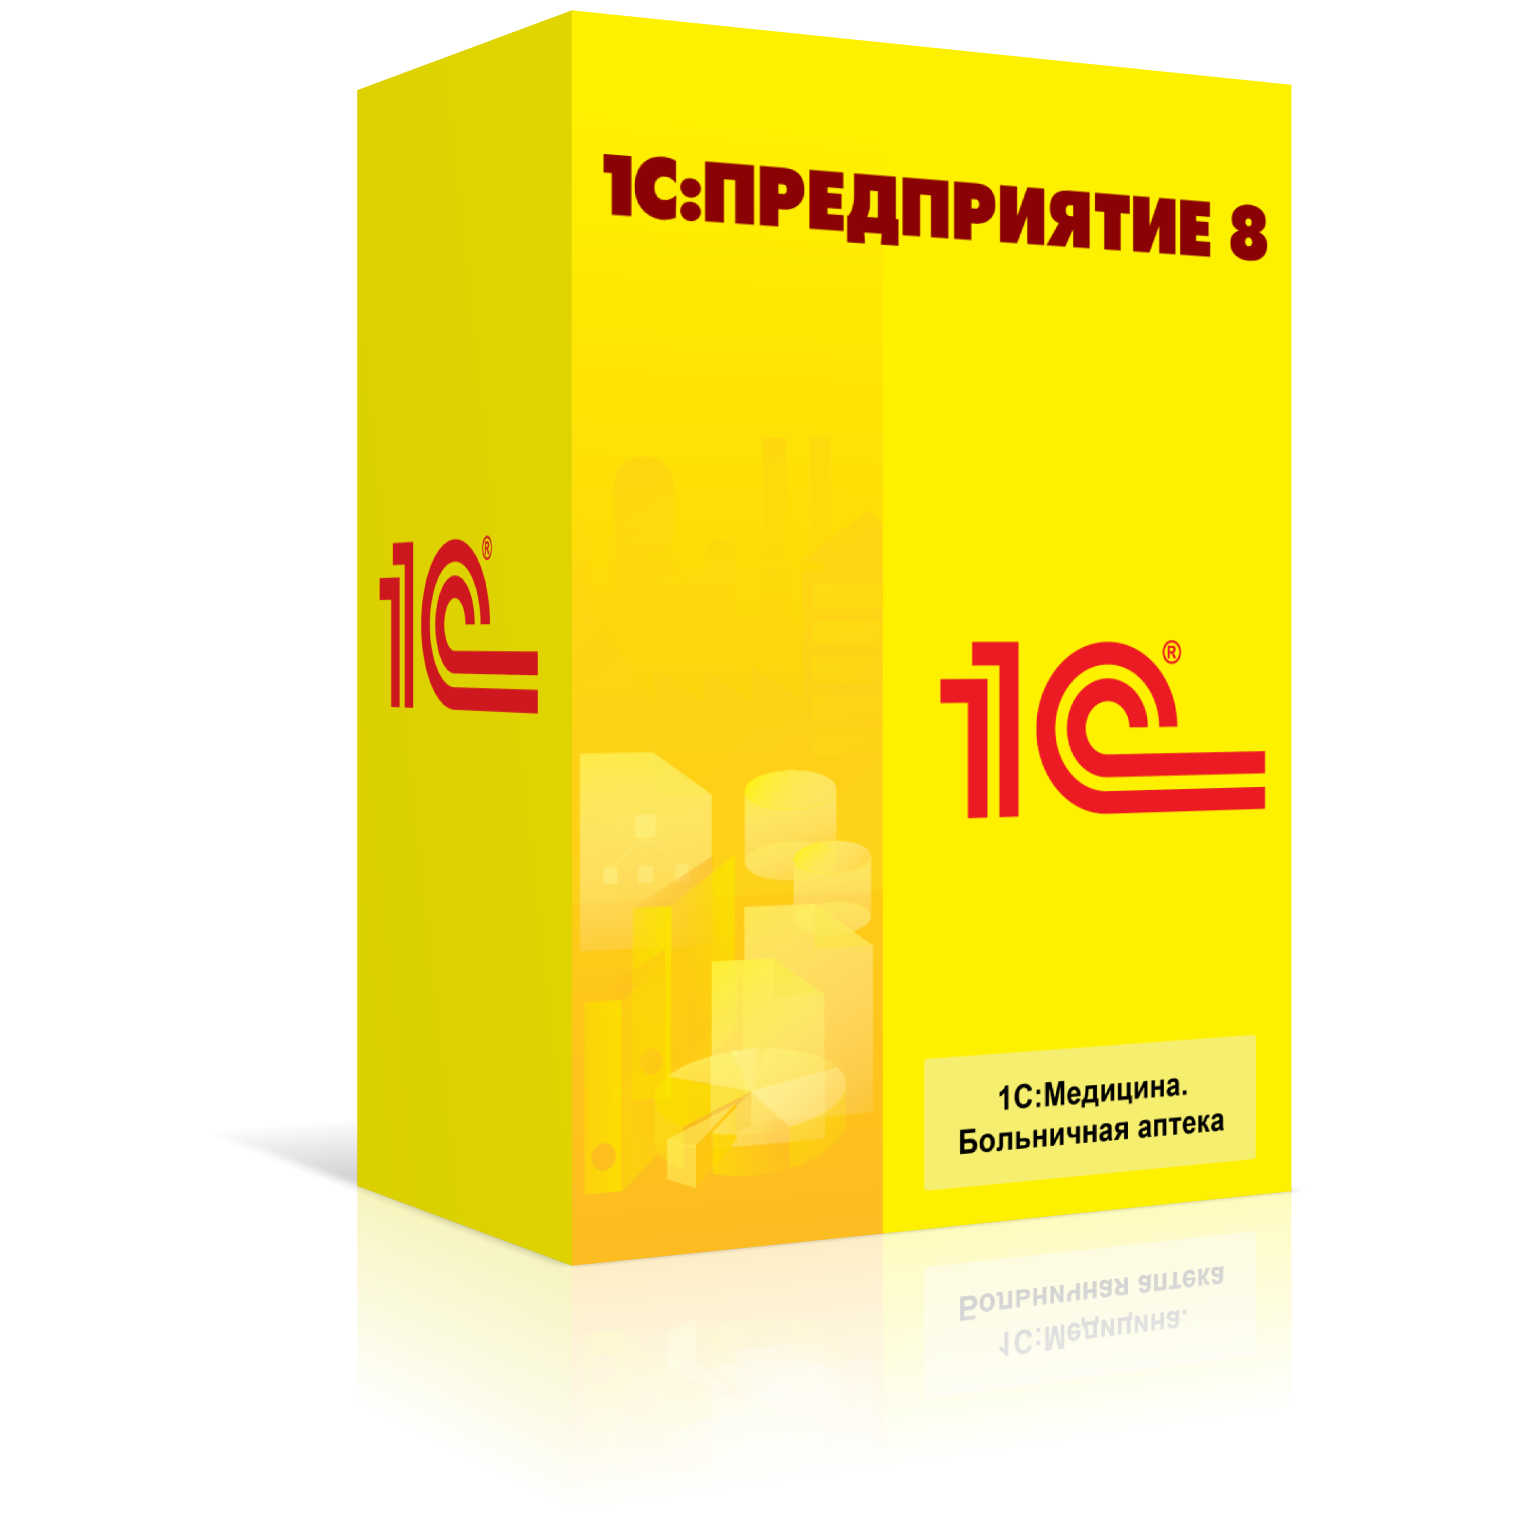 1CP8_Medicine_Bolnichnaya_apteka_left_s otrageniem.png